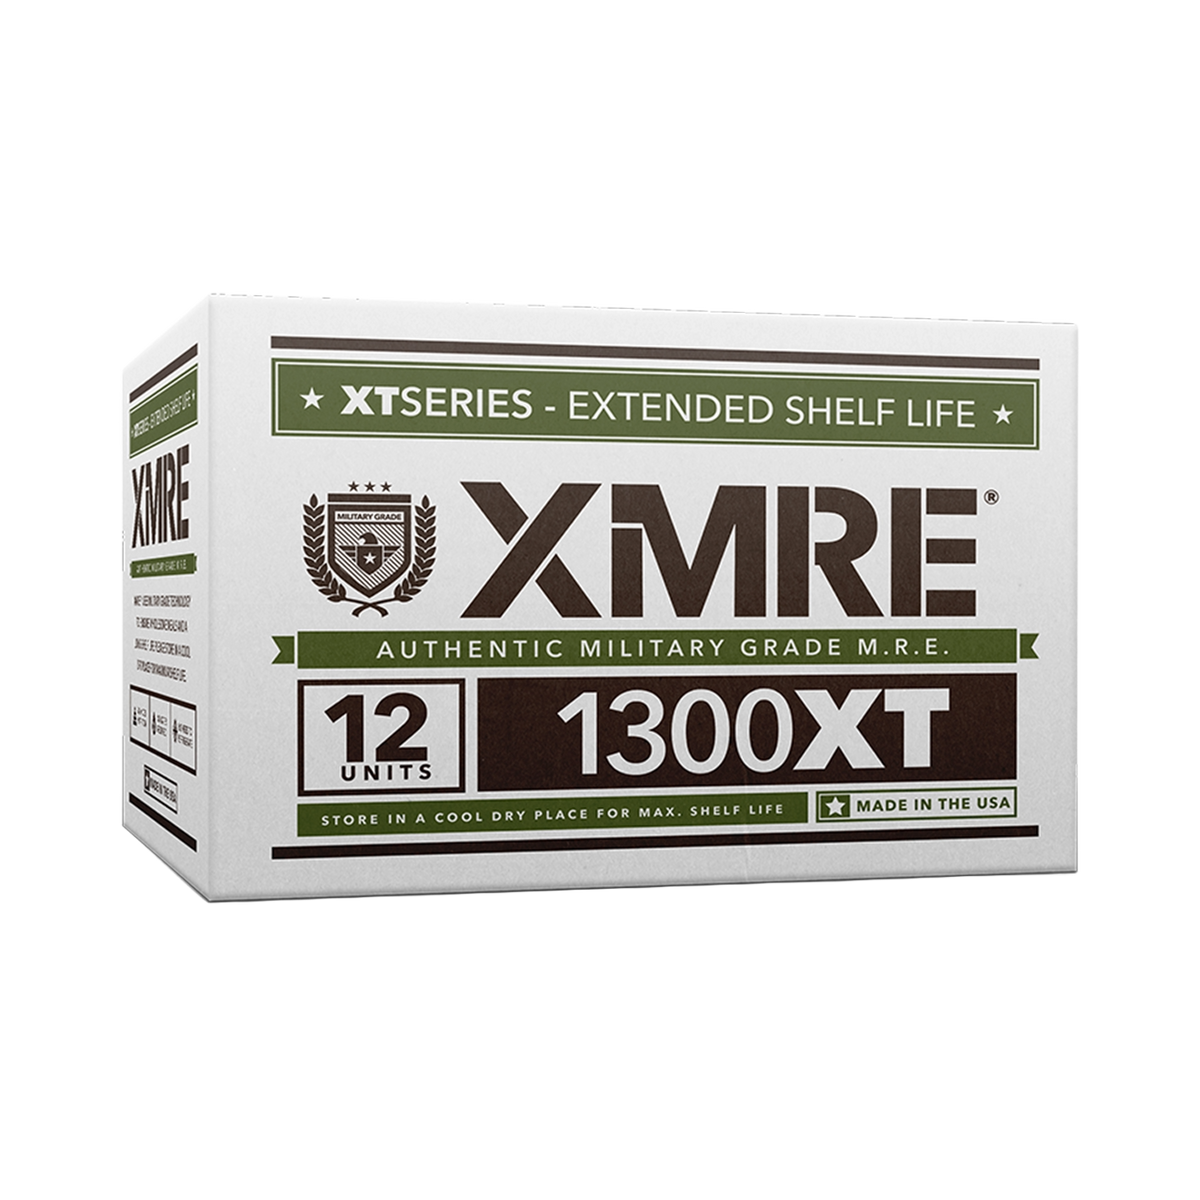 XMRE 1300XT – CASE OF 12 FRH